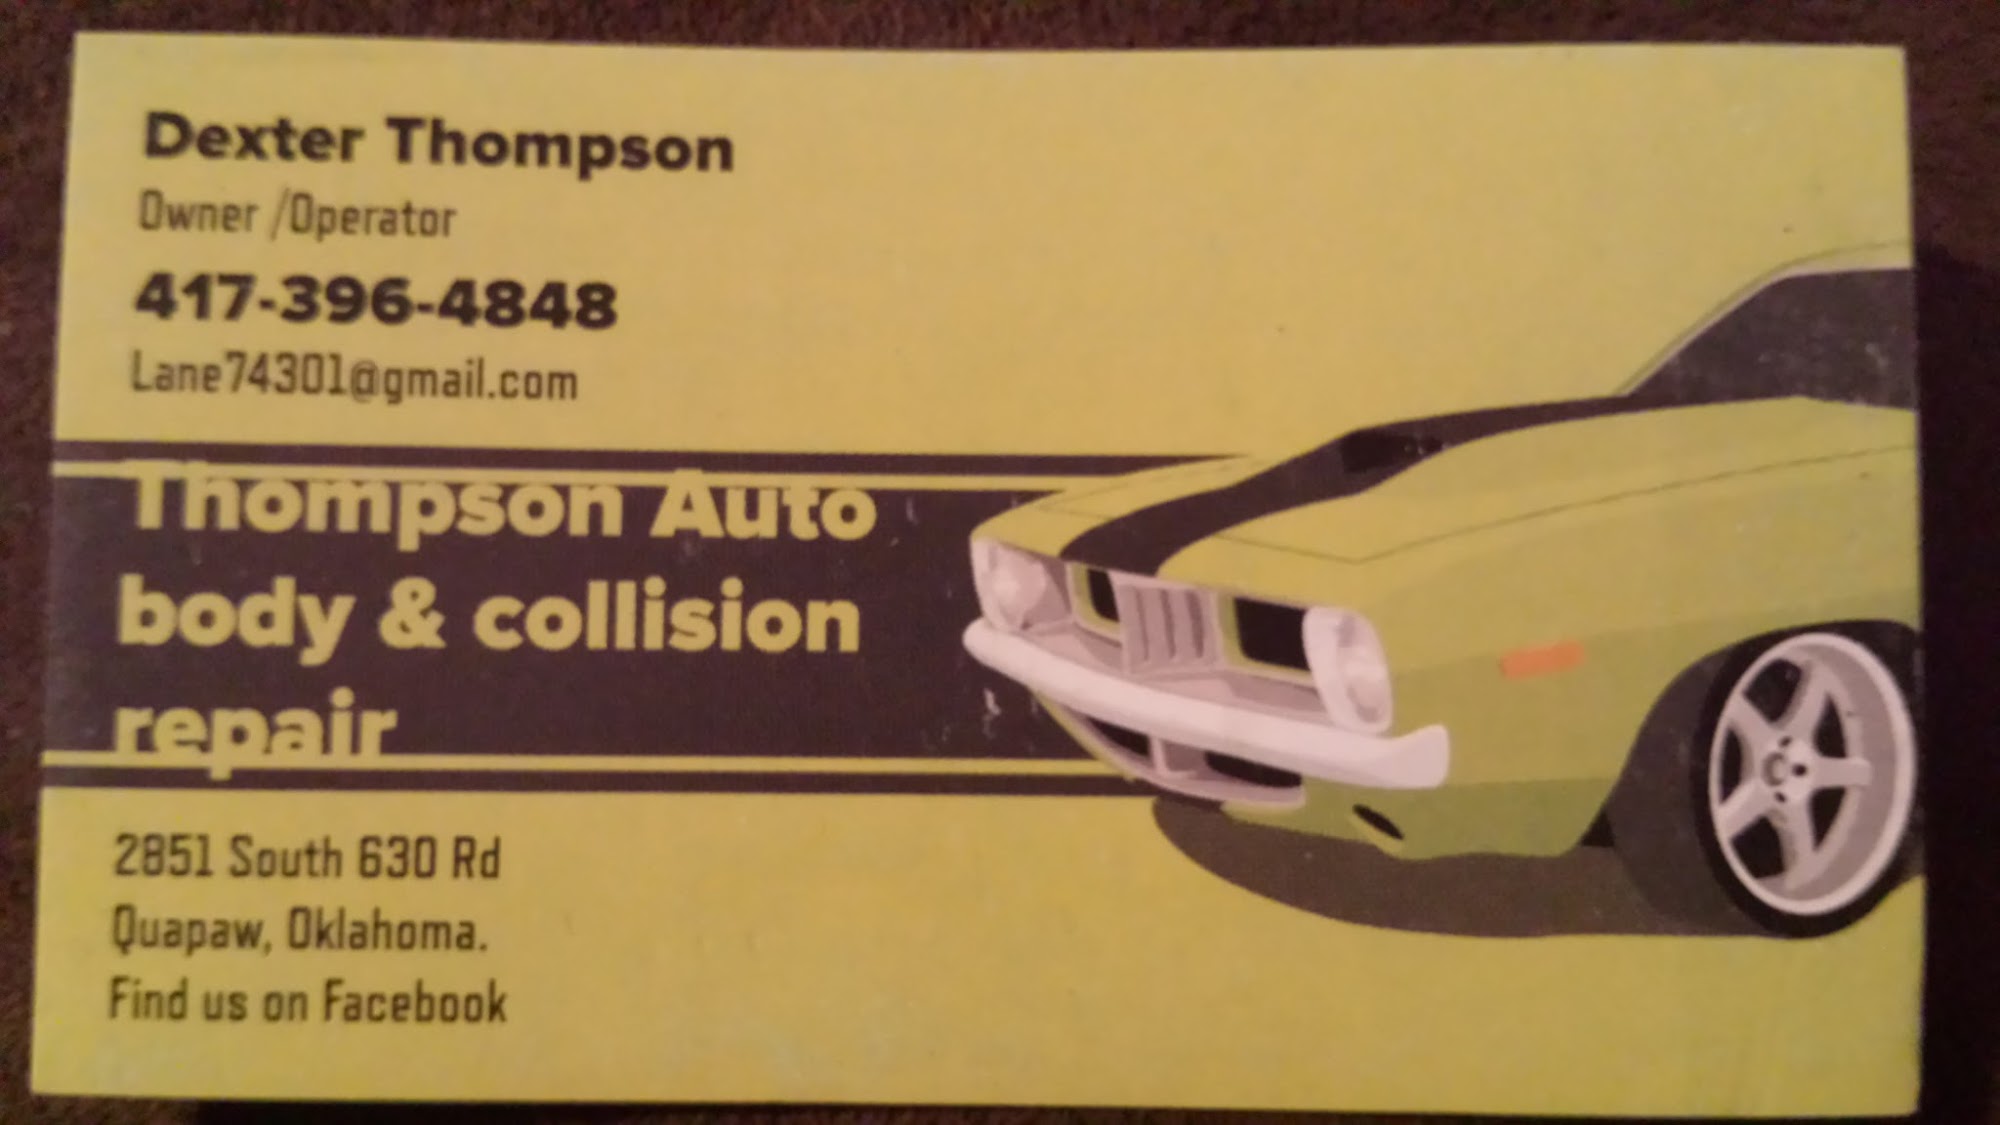 Thompson Automotive & Sales LLC.